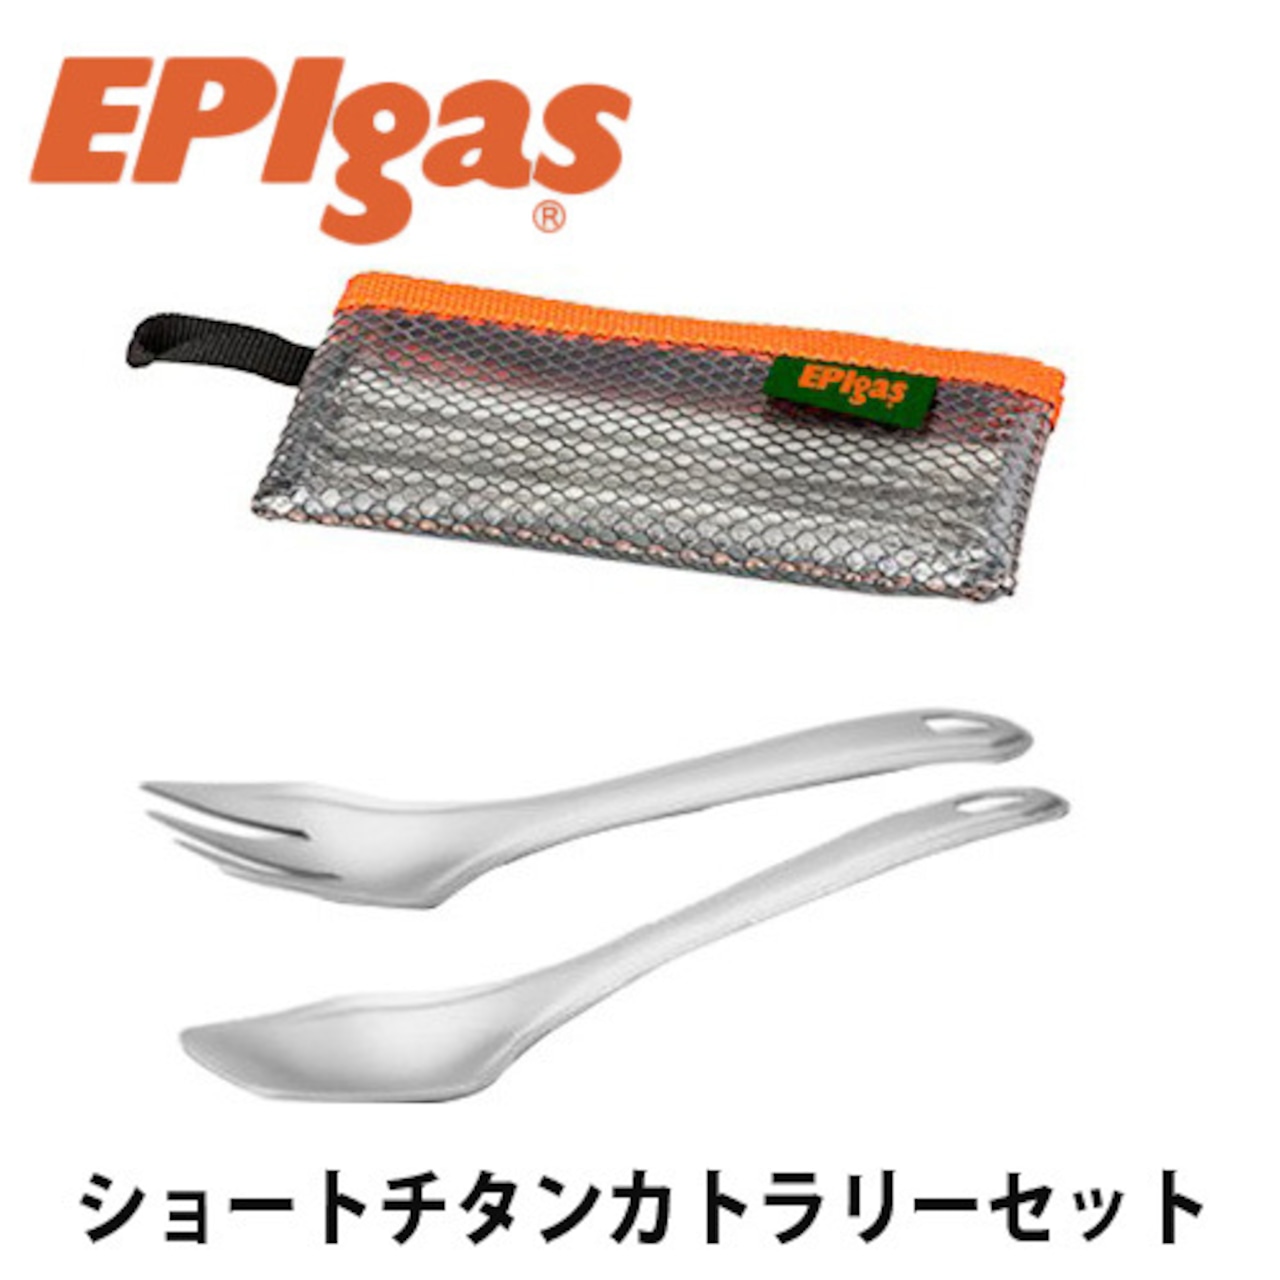 EPIgas(イーピーアイ ガス) ショートチタンカトラリーセット 高耐久性